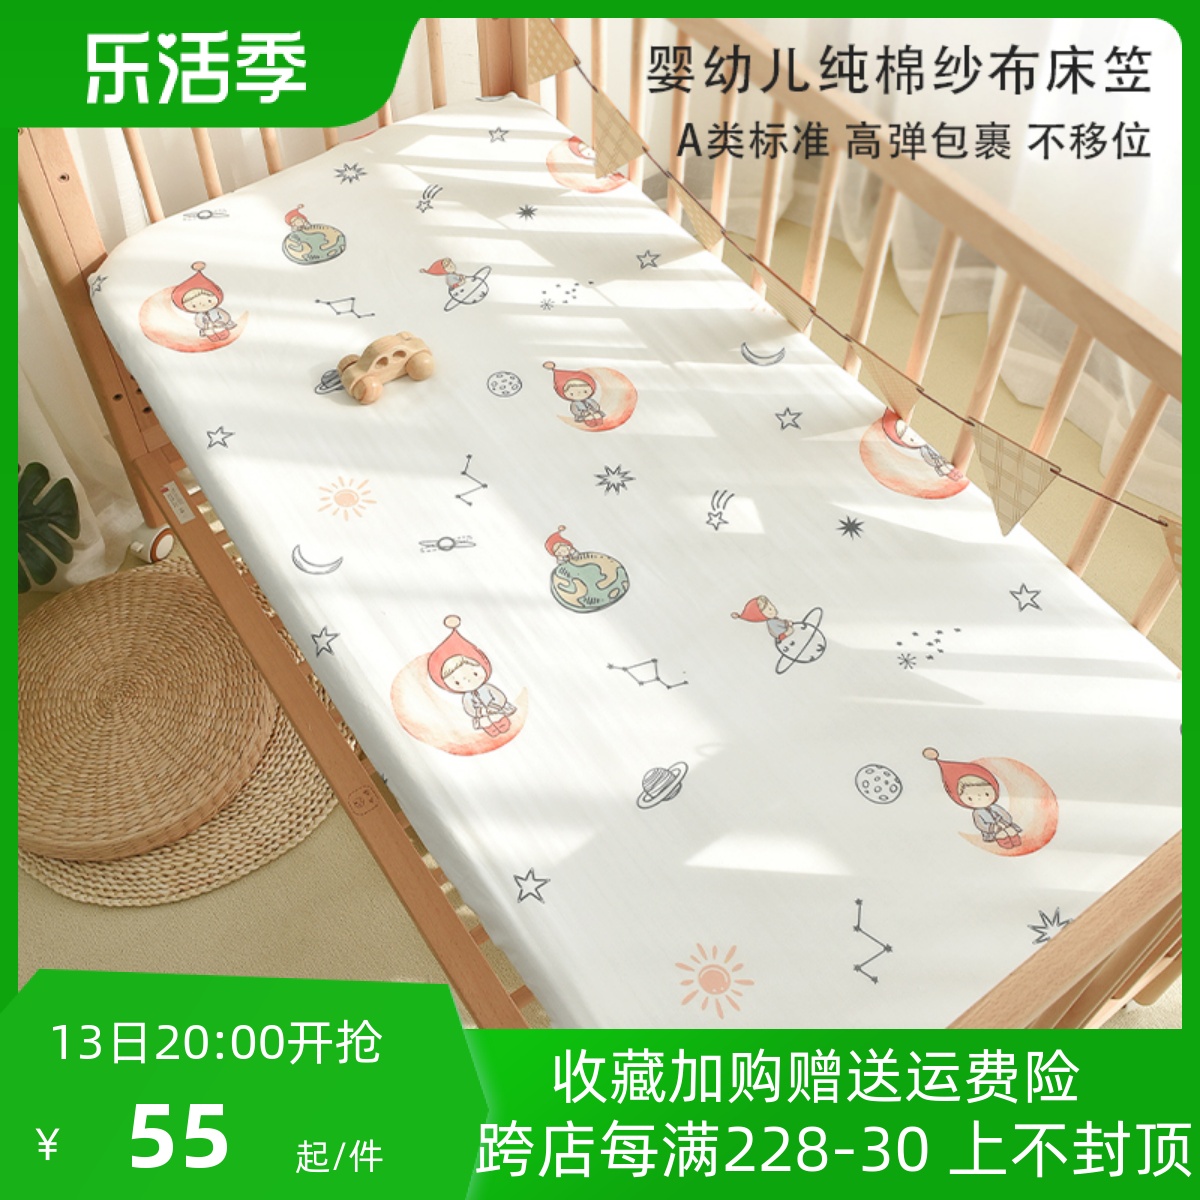 婴儿床笠纯棉新生儿童床垫罩保护套幼儿园宝宝可定制床单四季通用